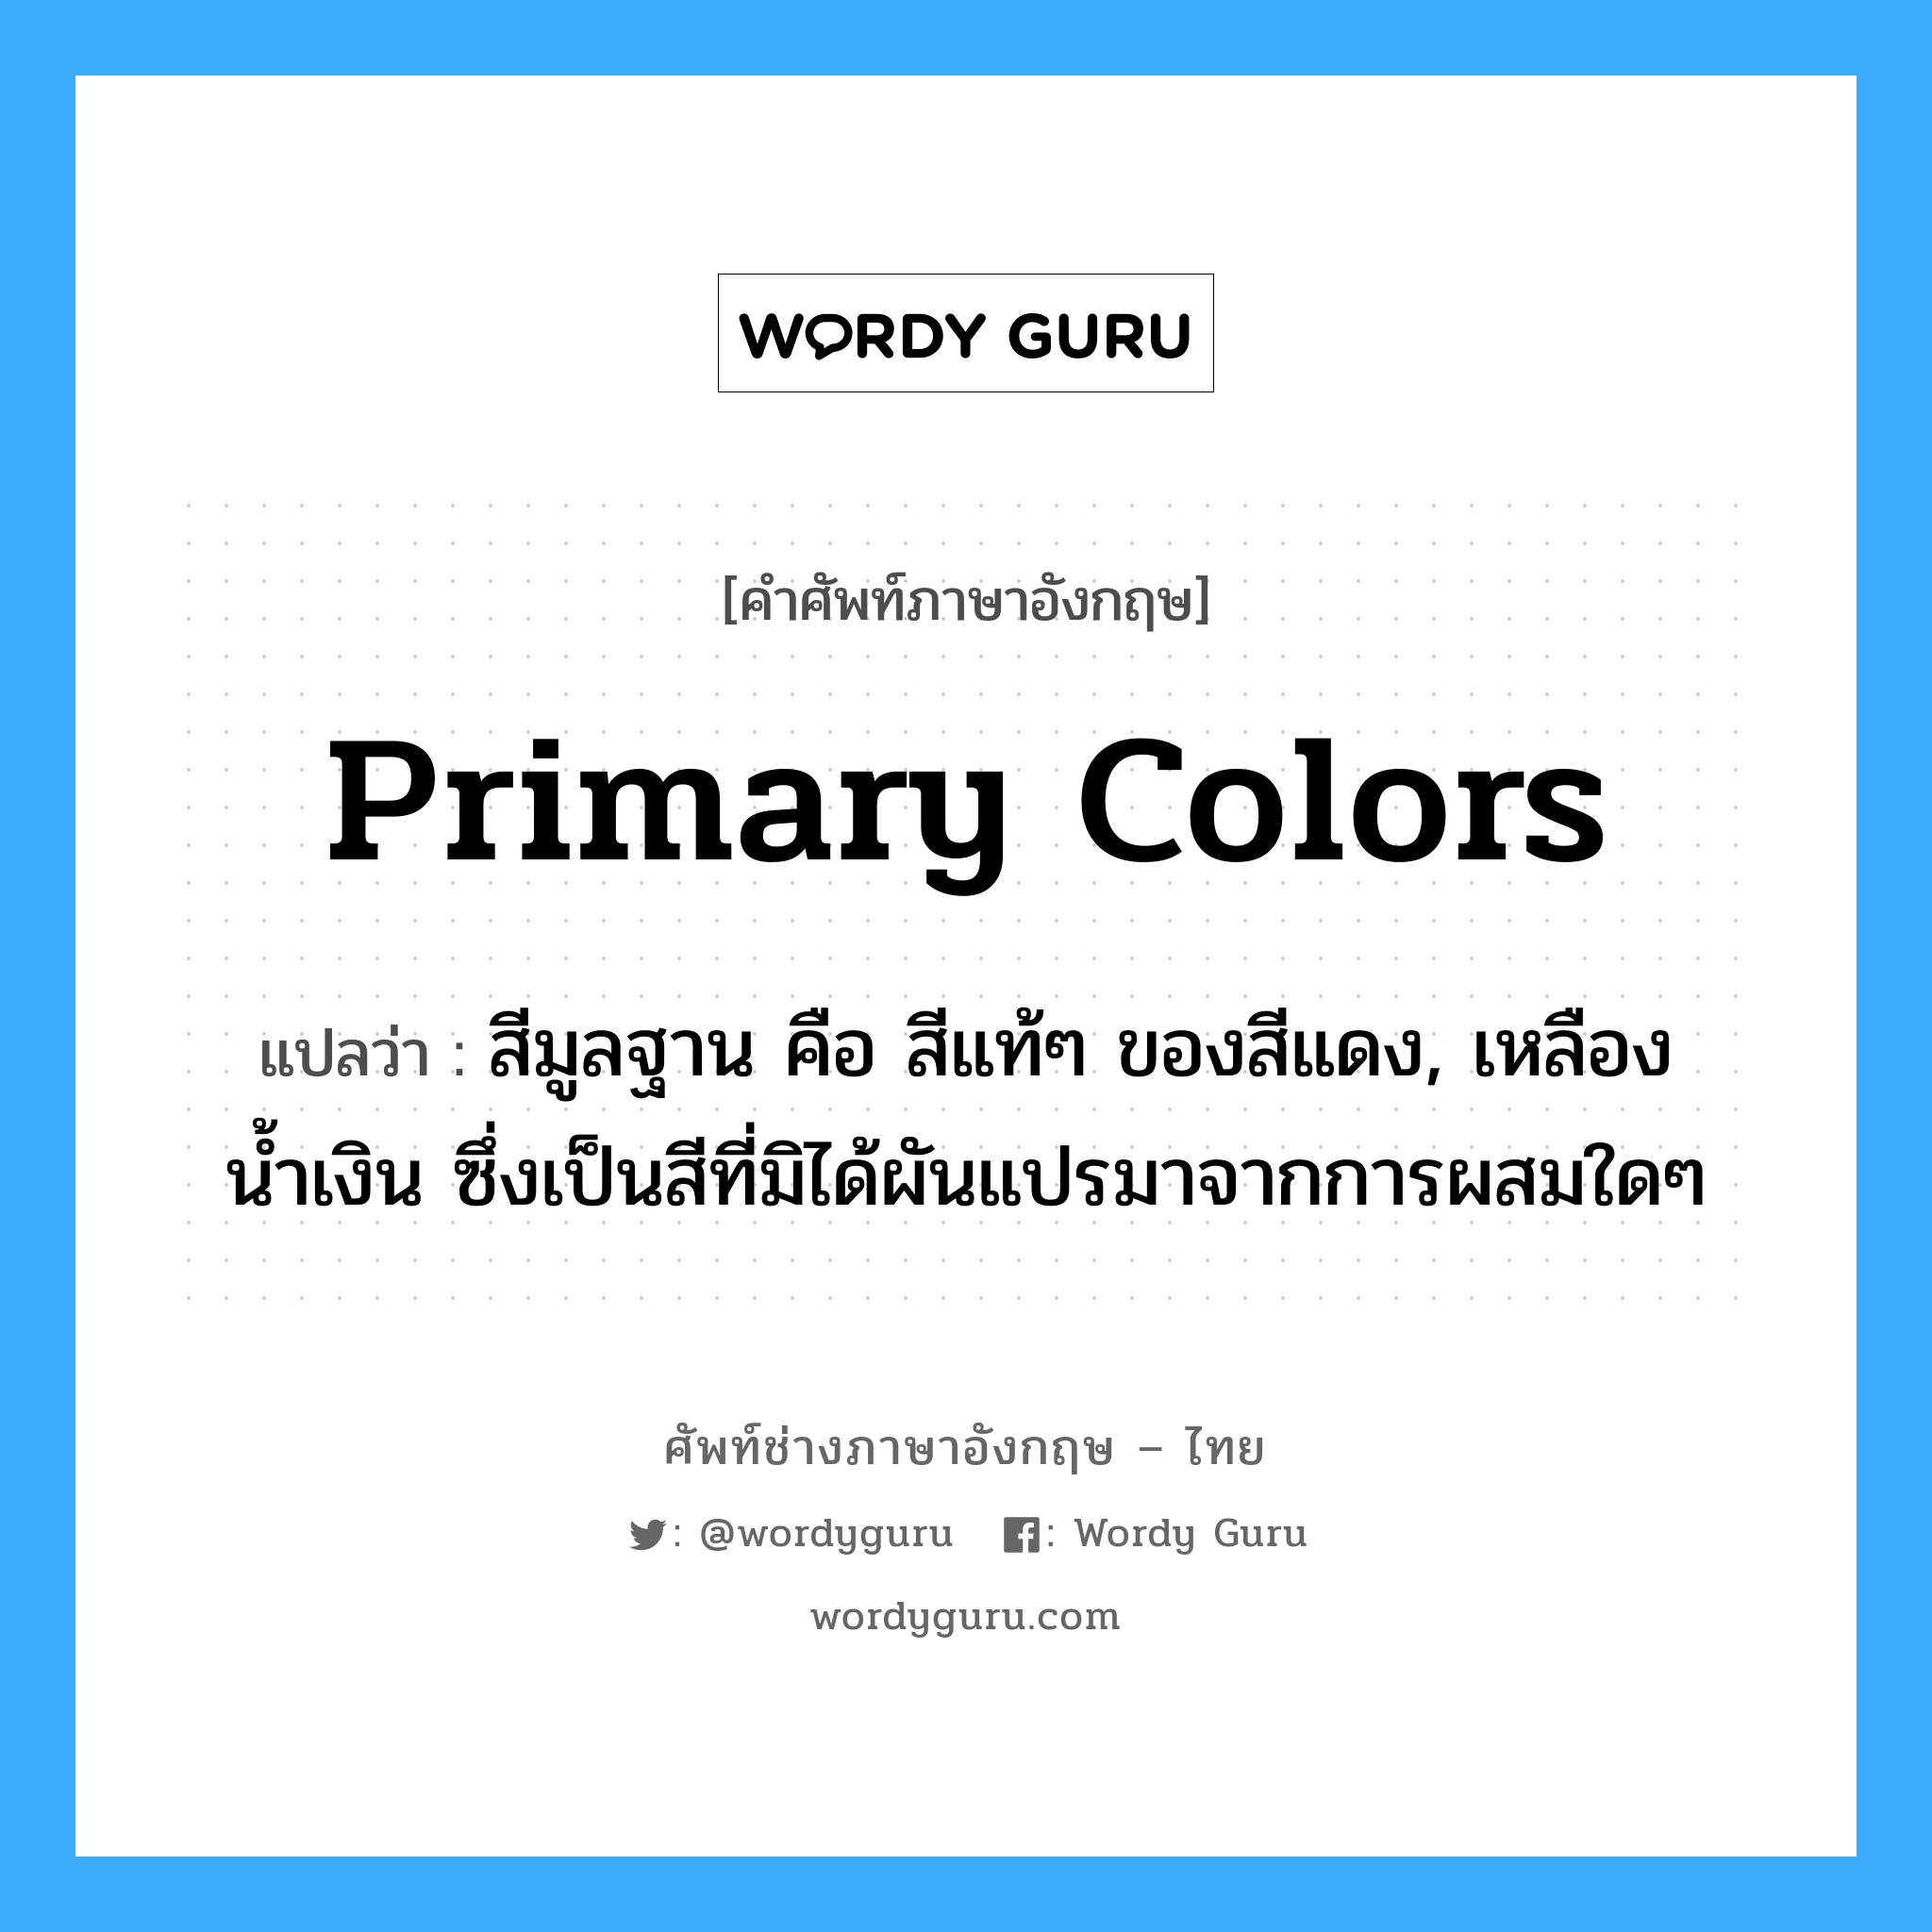 primary colors แปลว่า?, คำศัพท์ช่างภาษาอังกฤษ - ไทย primary colors คำศัพท์ภาษาอังกฤษ primary colors แปลว่า สีมูลฐาน คือ สีแท้ๆ ของสีแดง, เหลือง น้ำเงิน ซึ่งเป็นสีที่มิได้ผันแปรมาจากการผสมใดๆ